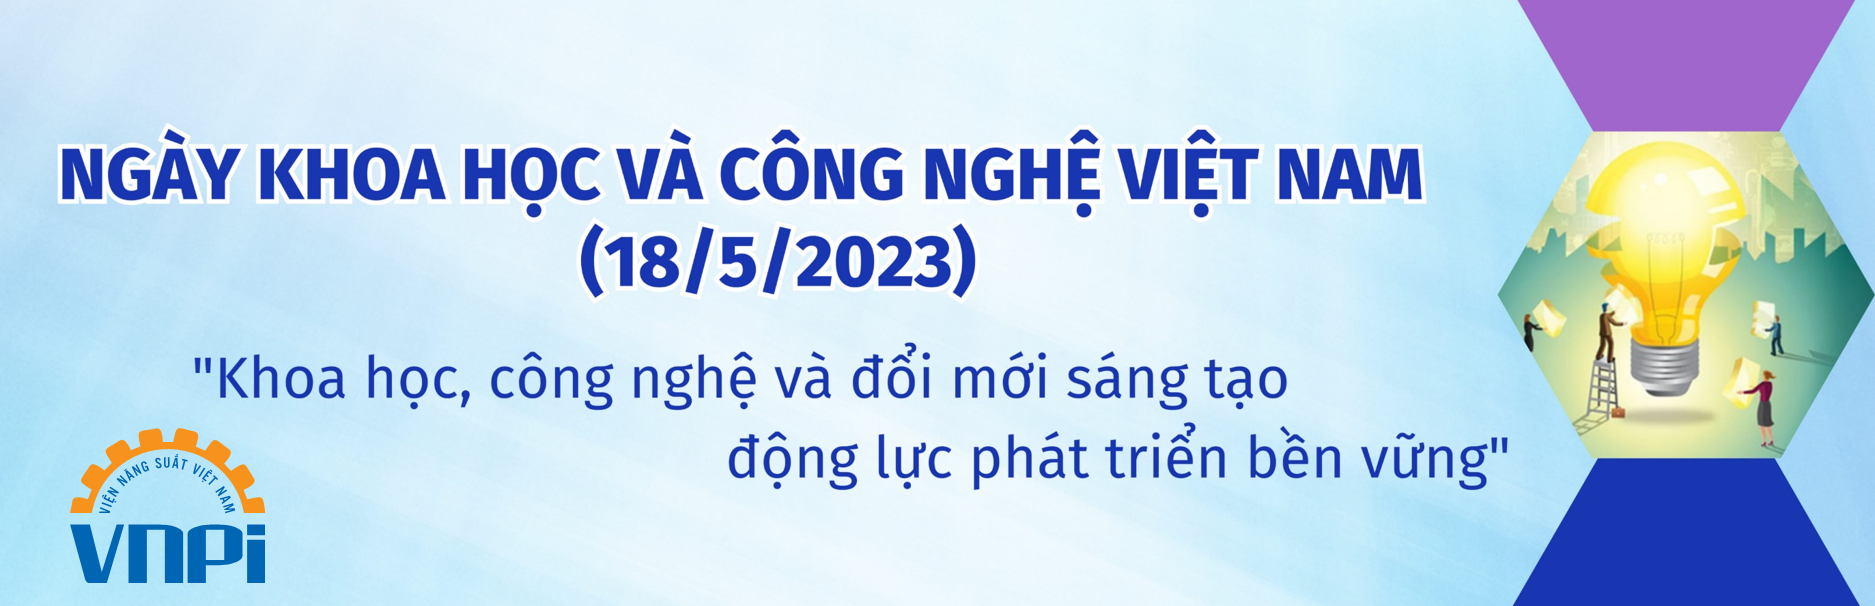 Ngày Khoa học và Công nghệ Việt Nam 2023